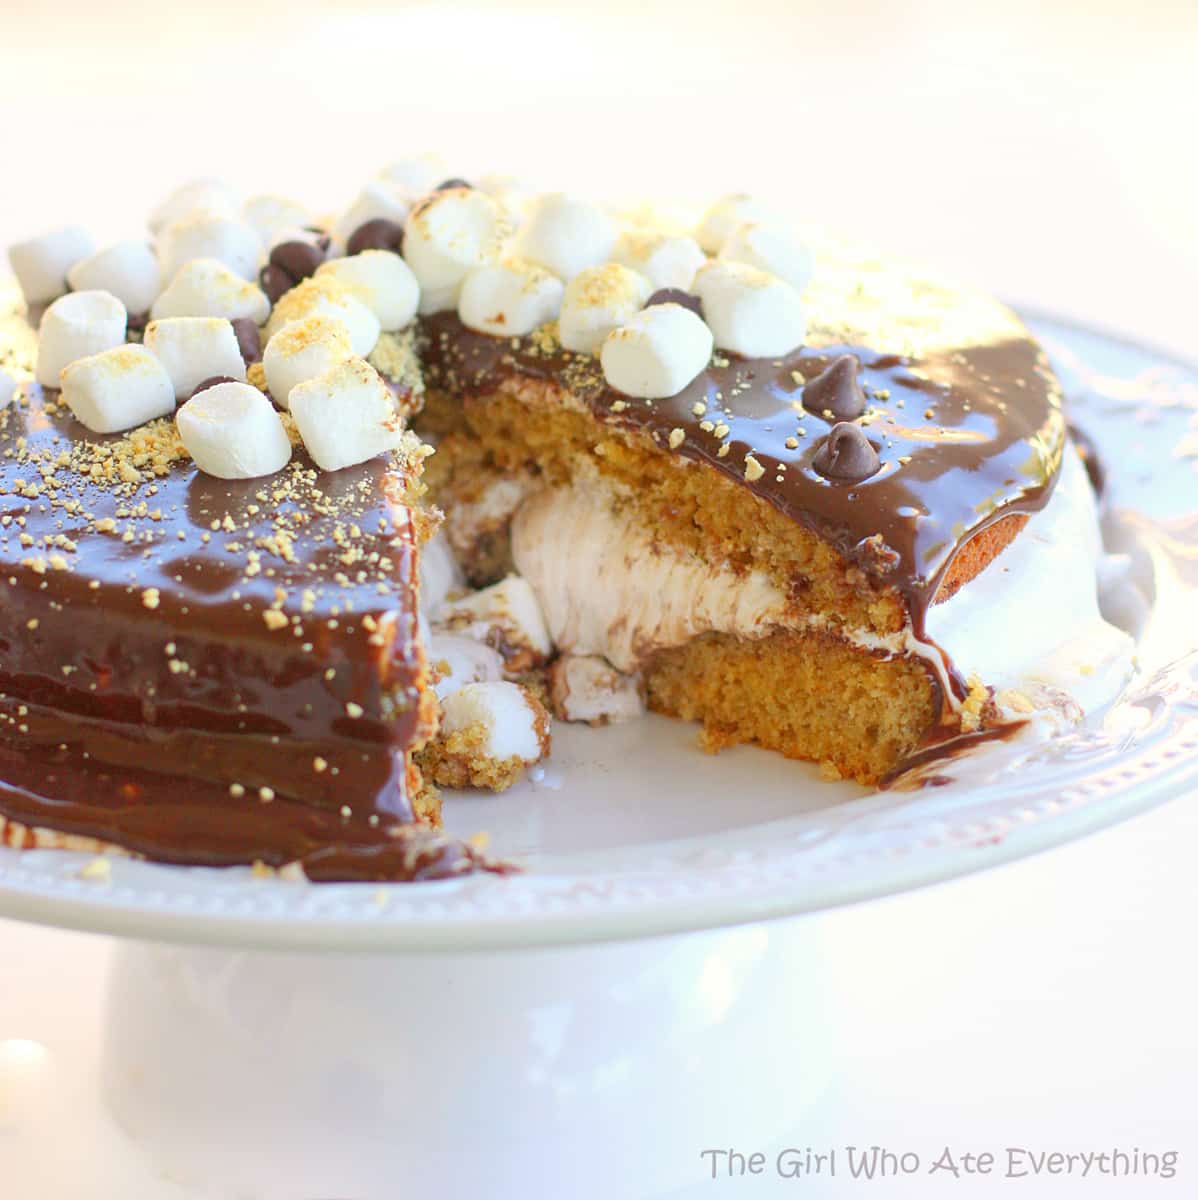 Scrumptious S'mores Layer Cake Recipe — Bite Me More